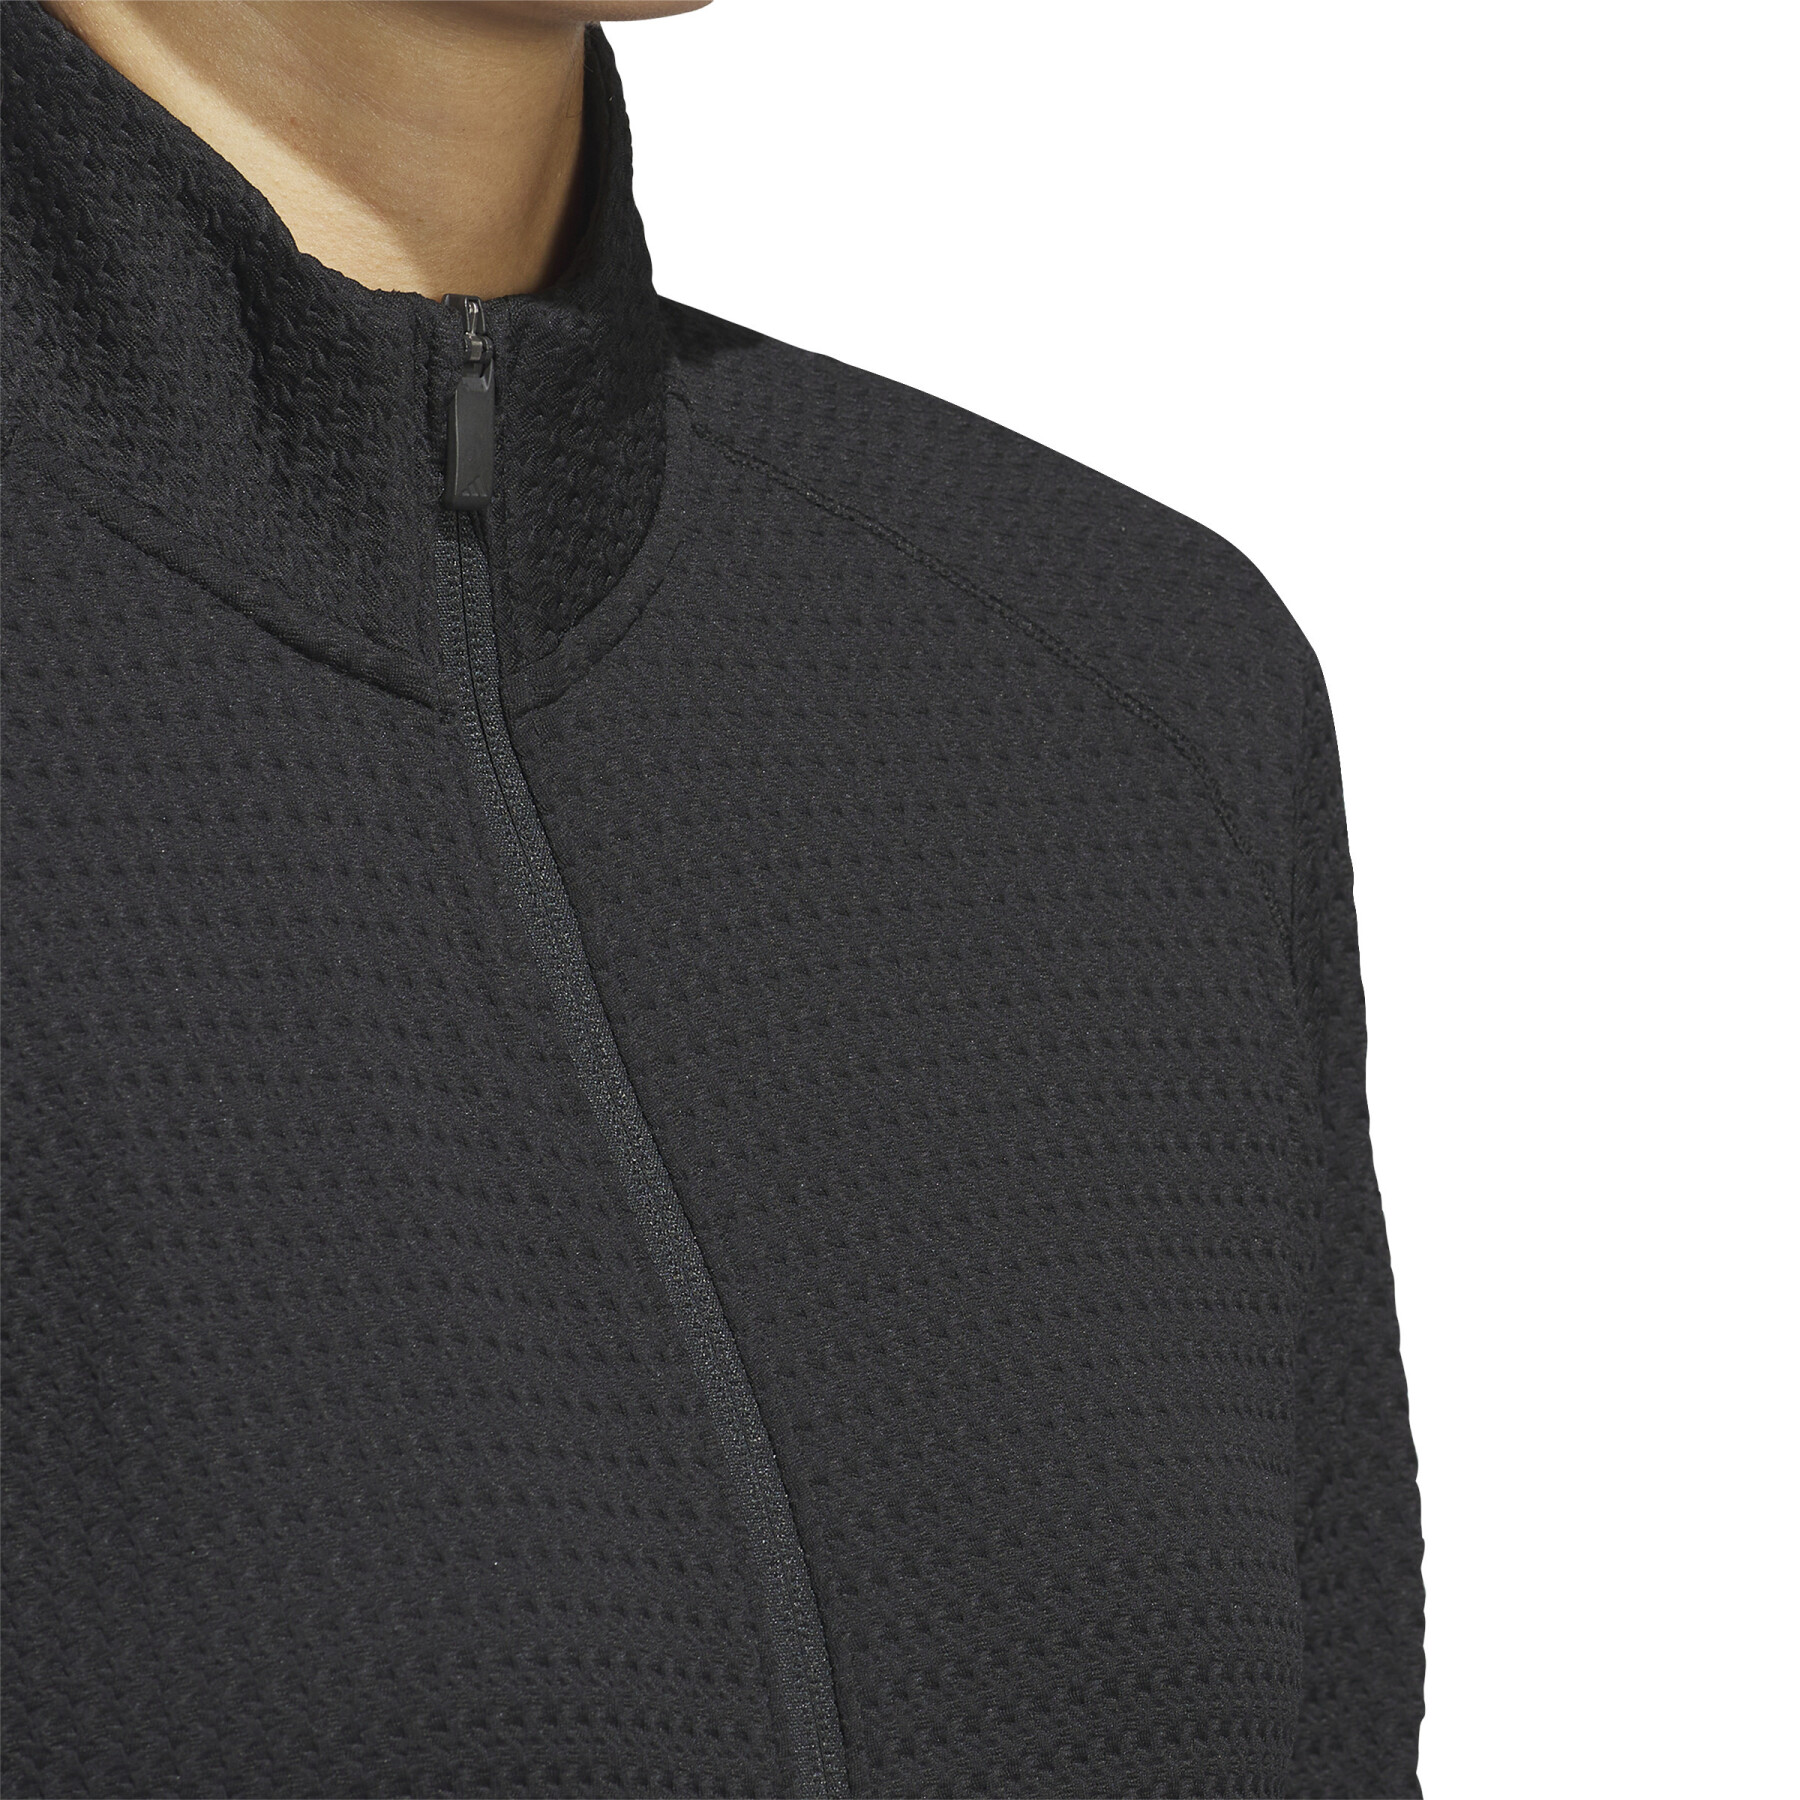 Veste de survêtement texturé femme adidas Ultimate365